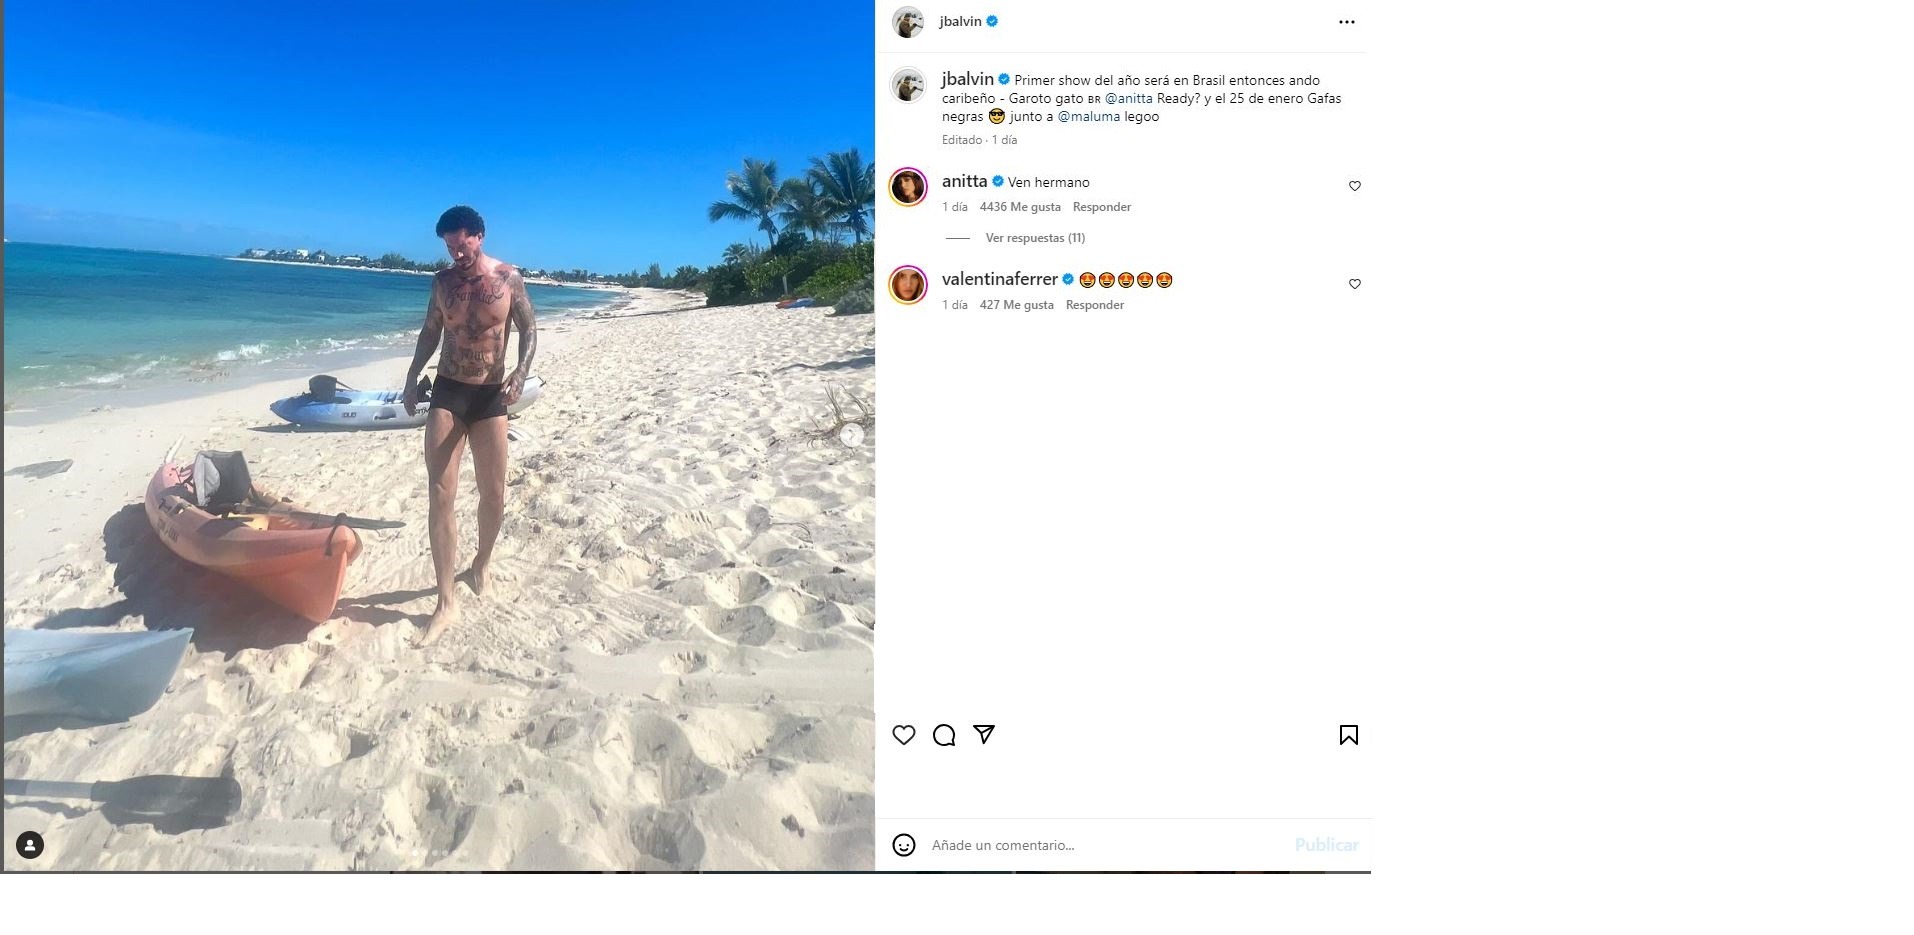 Esta es la última fotografía de J Balvin mostrando parte de sus vacaciones junto a Valentina y su hijo y contando que hará un show con Anitta y como se aprecia Ferrer reacciona con emojis de amor a Balvin/Foto: Instagram